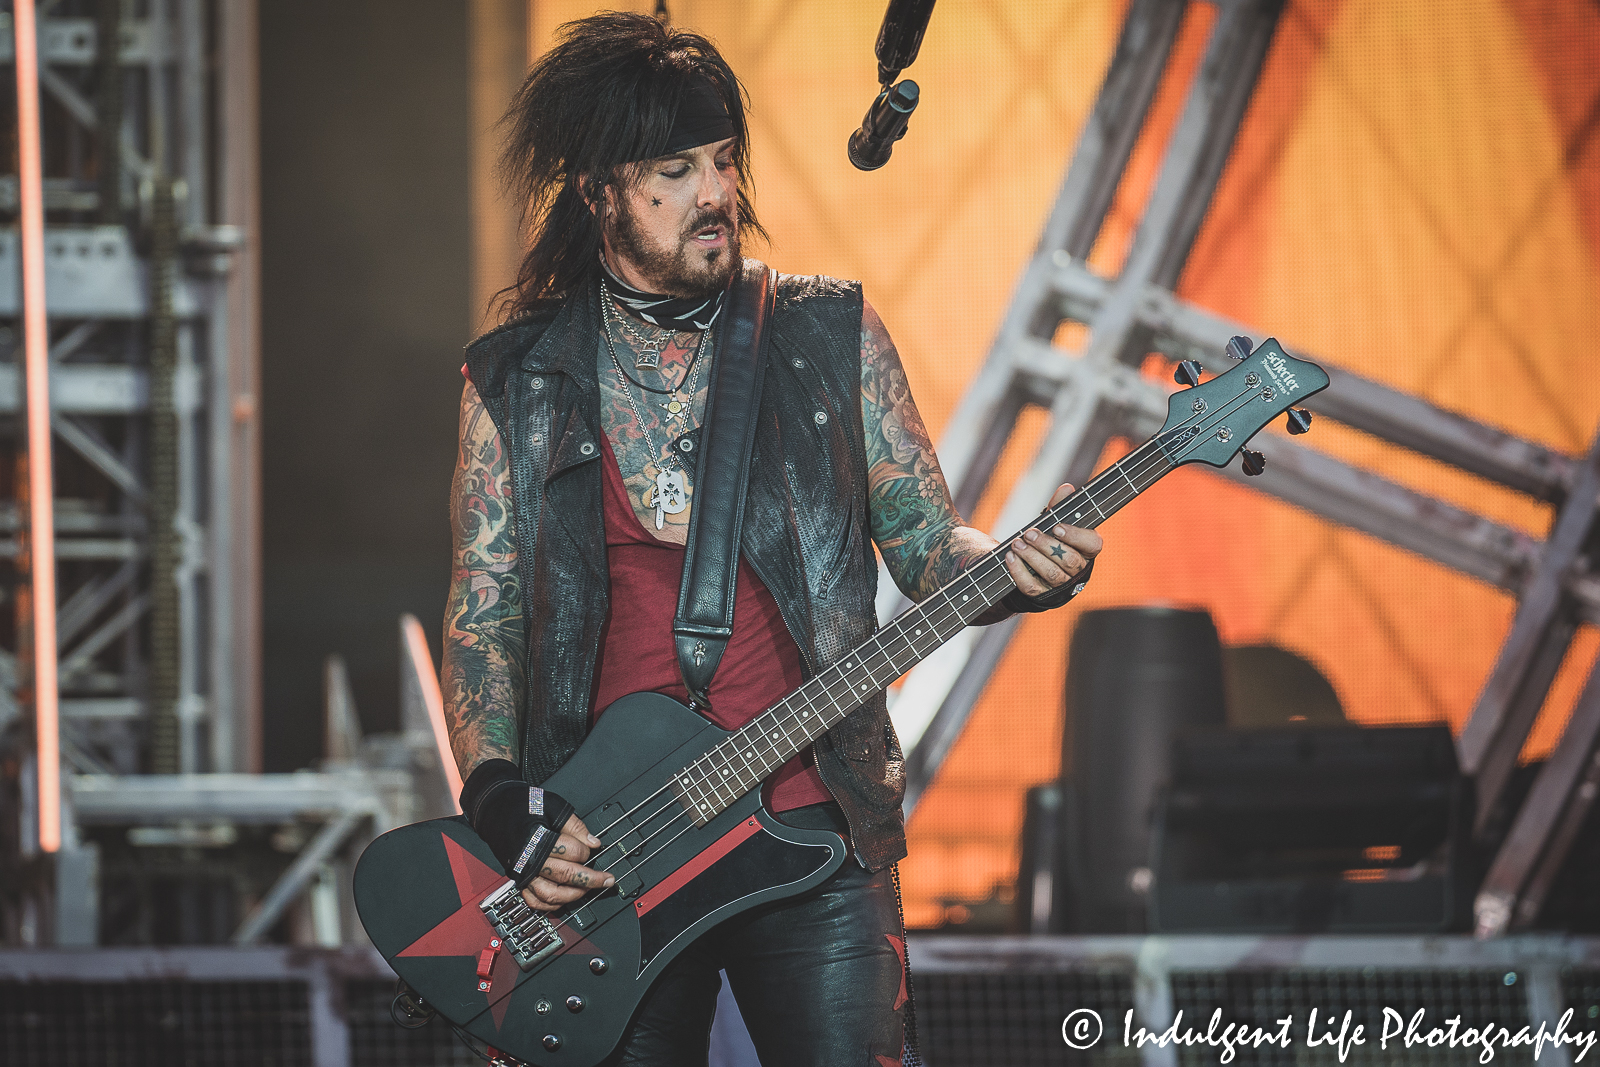 Mötley Crüe bass guitarist Nikki Sixx playing live during the stadium tour stop at Kauffman Stadium in Kansas City, MO on July 19, 2022.